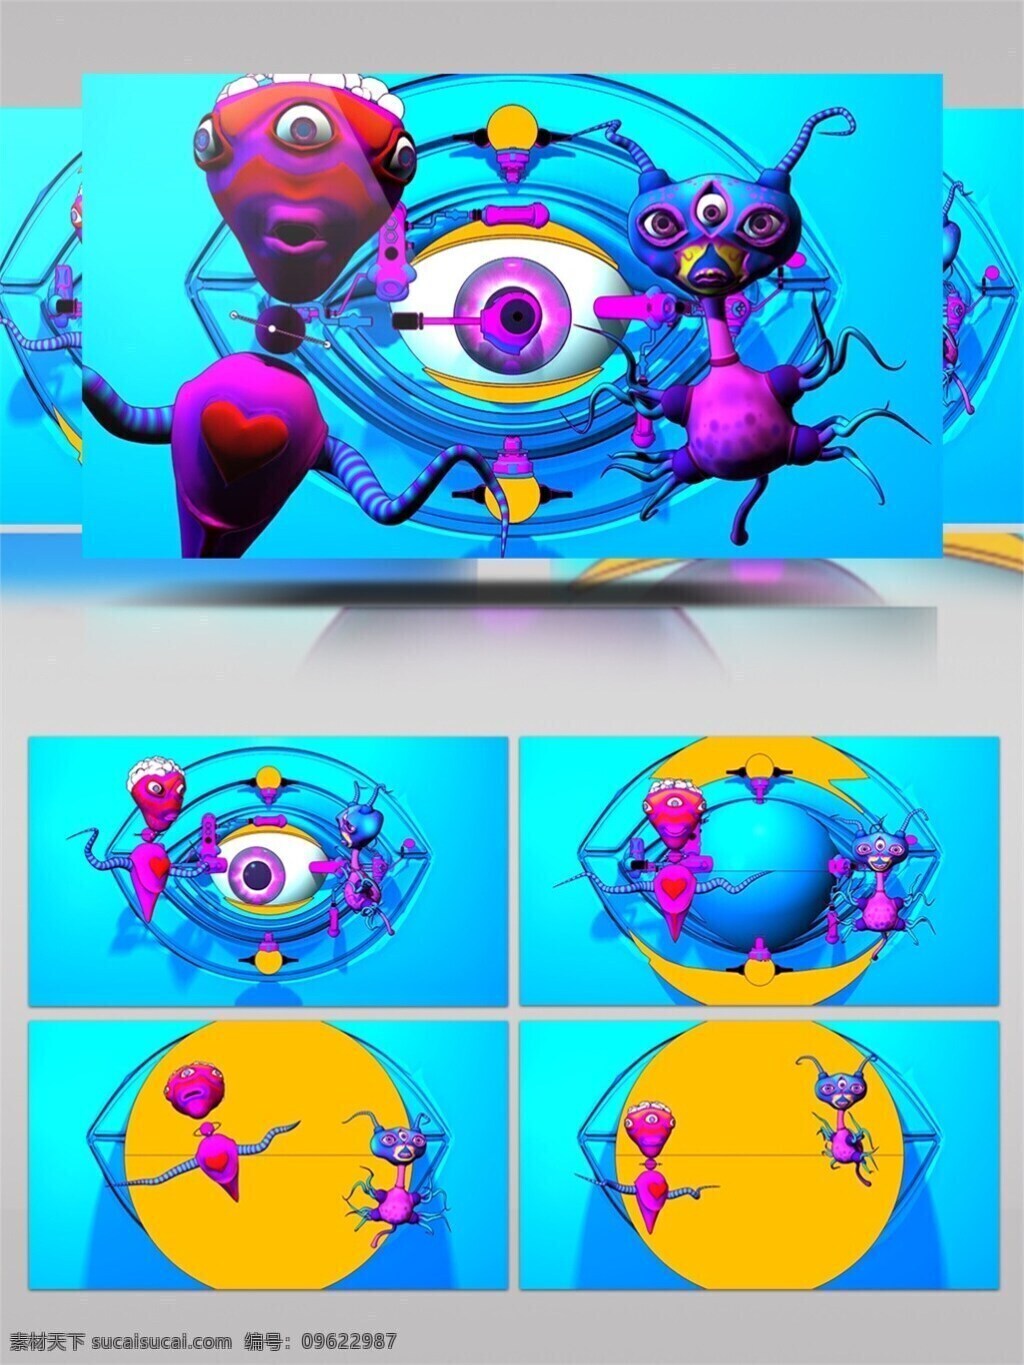 创意 色彩 主题 视频 亮色 3d卡通 奇异元素 青春时尚 视频素材 动态视频素材